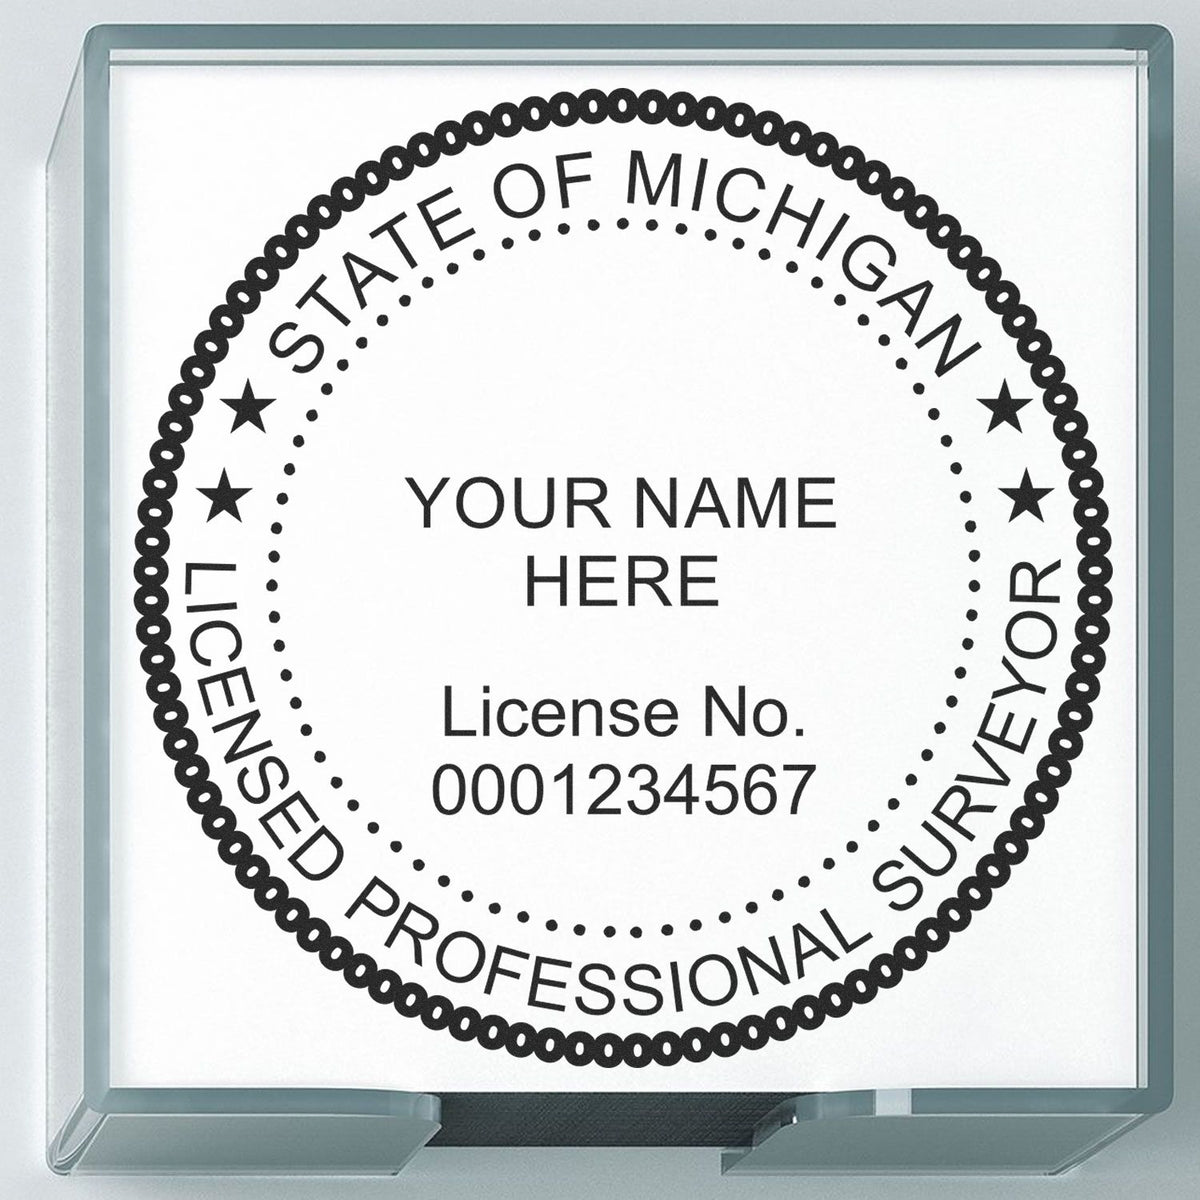 Michigan Land Surveyor Seal Stamp In Use Photo